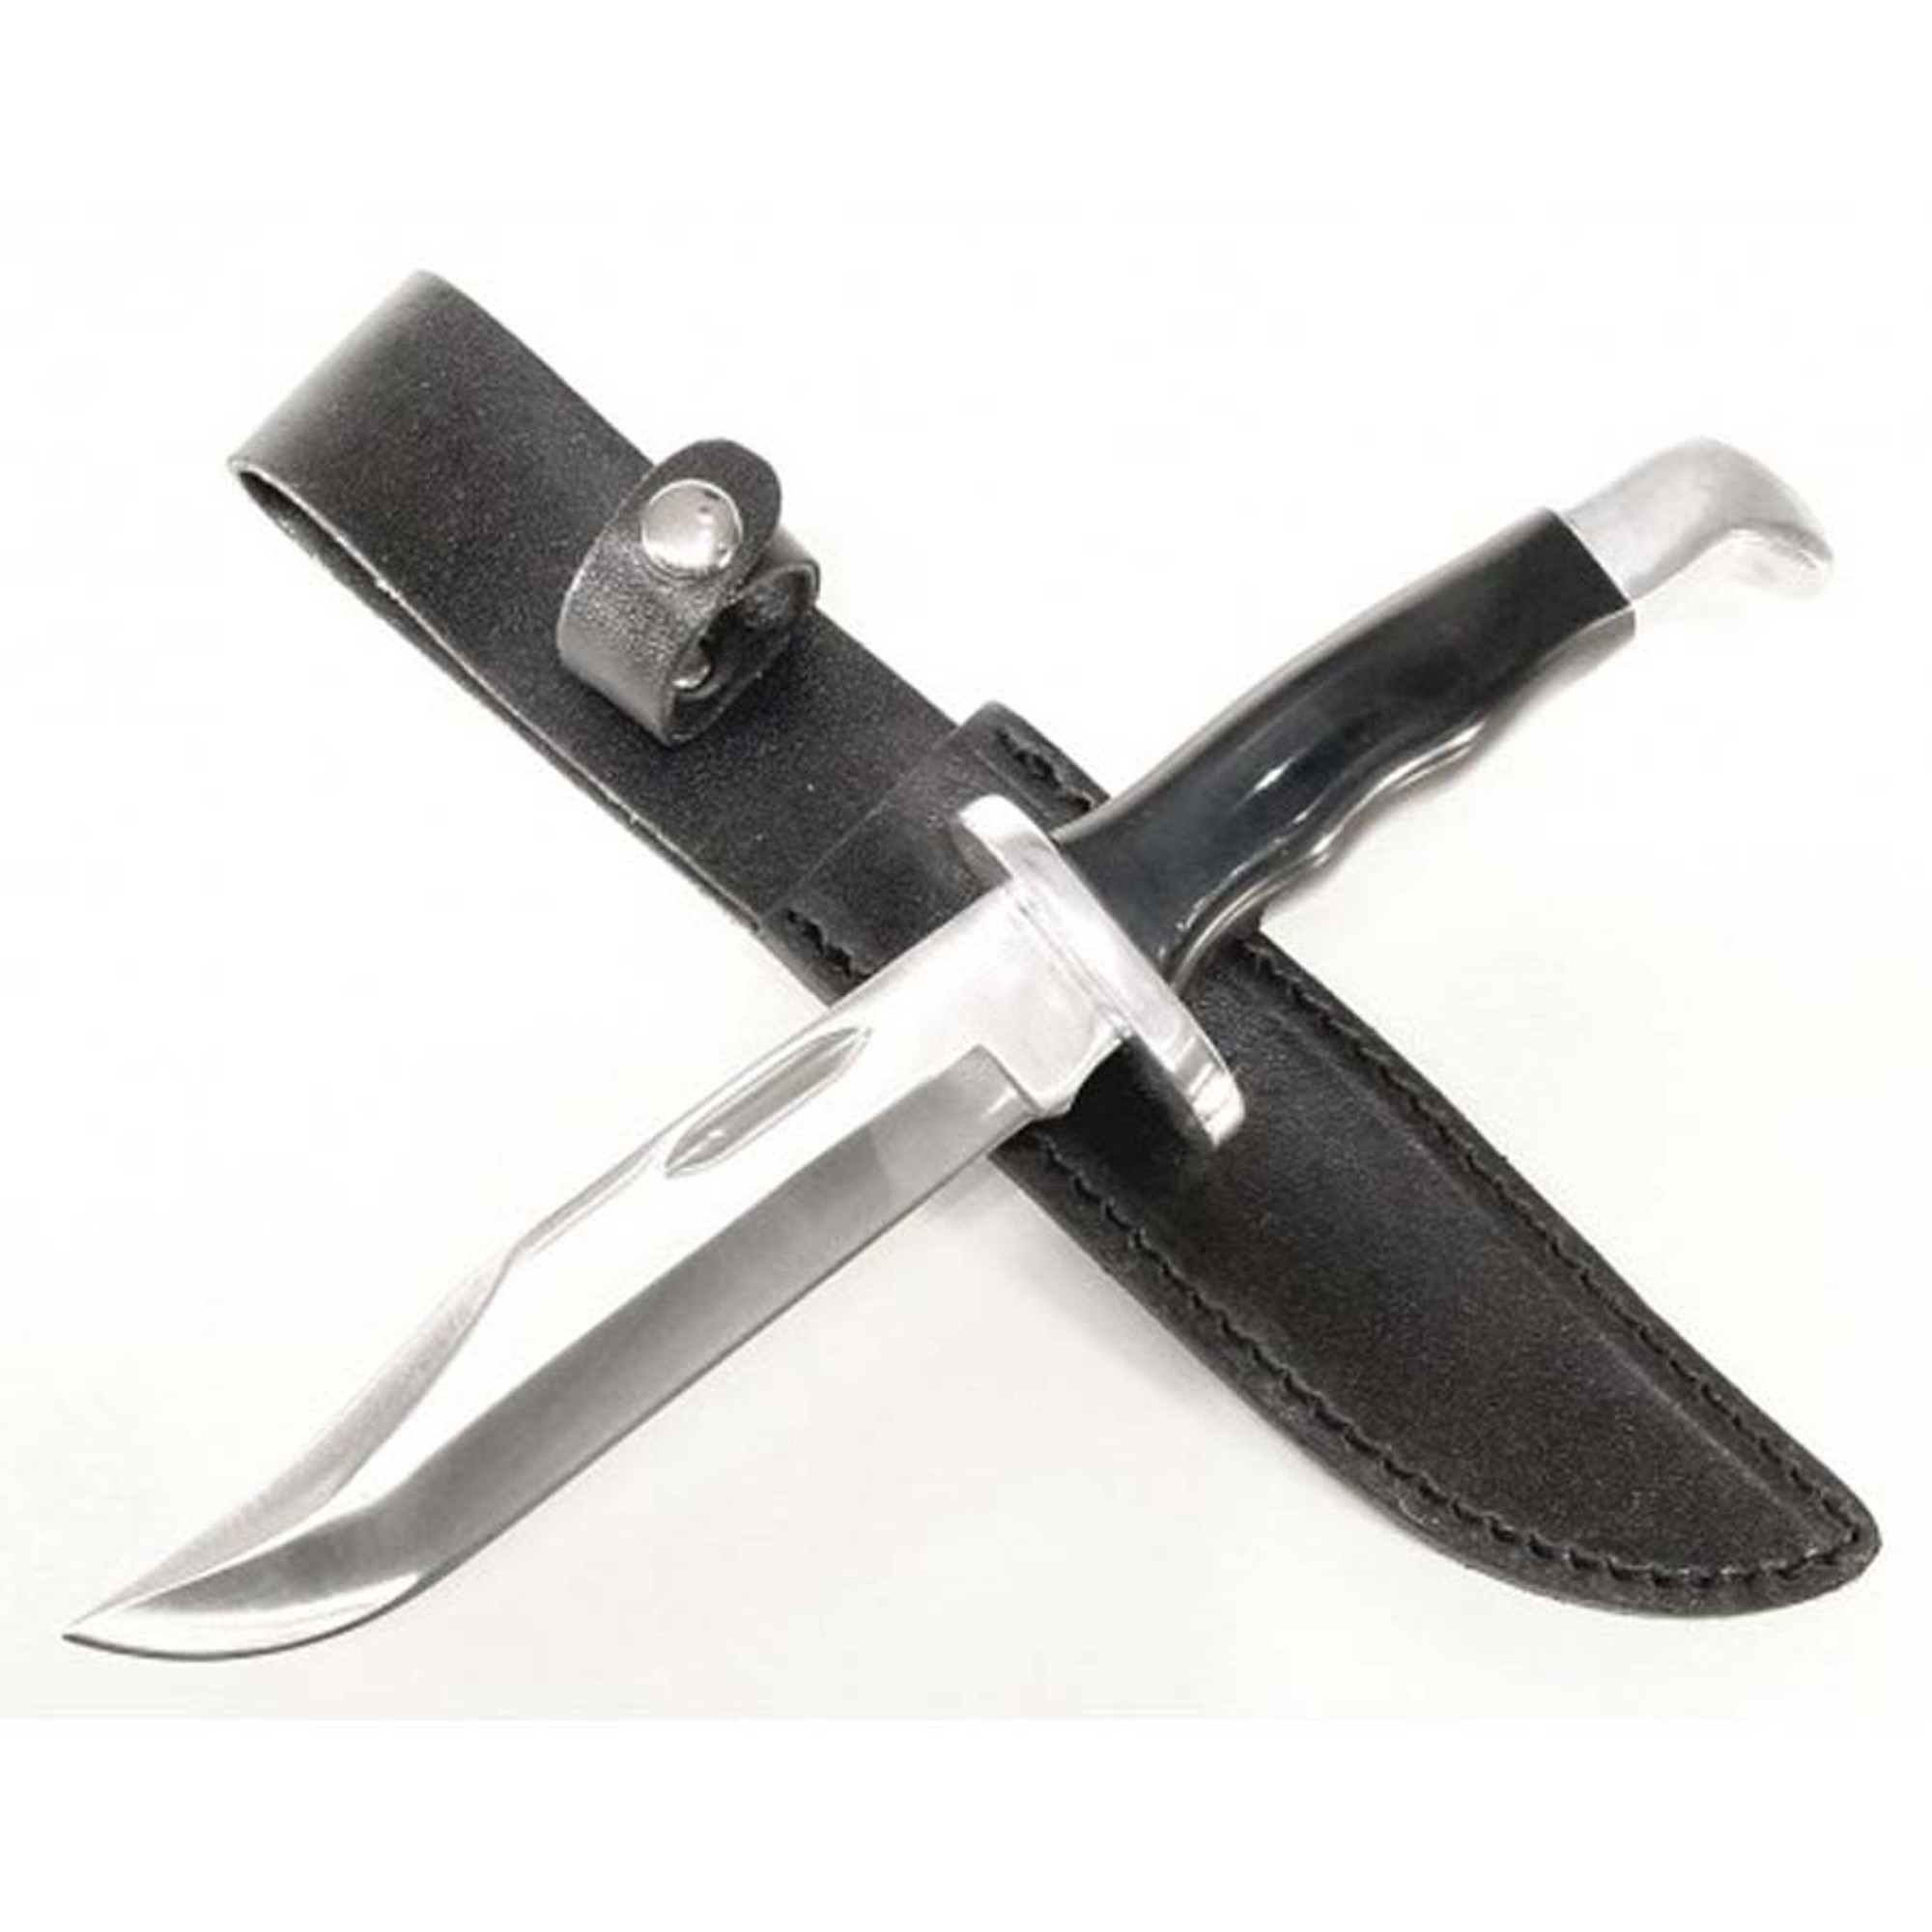 RUKO NK924-9SH, 420A, 5-3/4" Fixed Blade Hunting Knife, ABS Handle